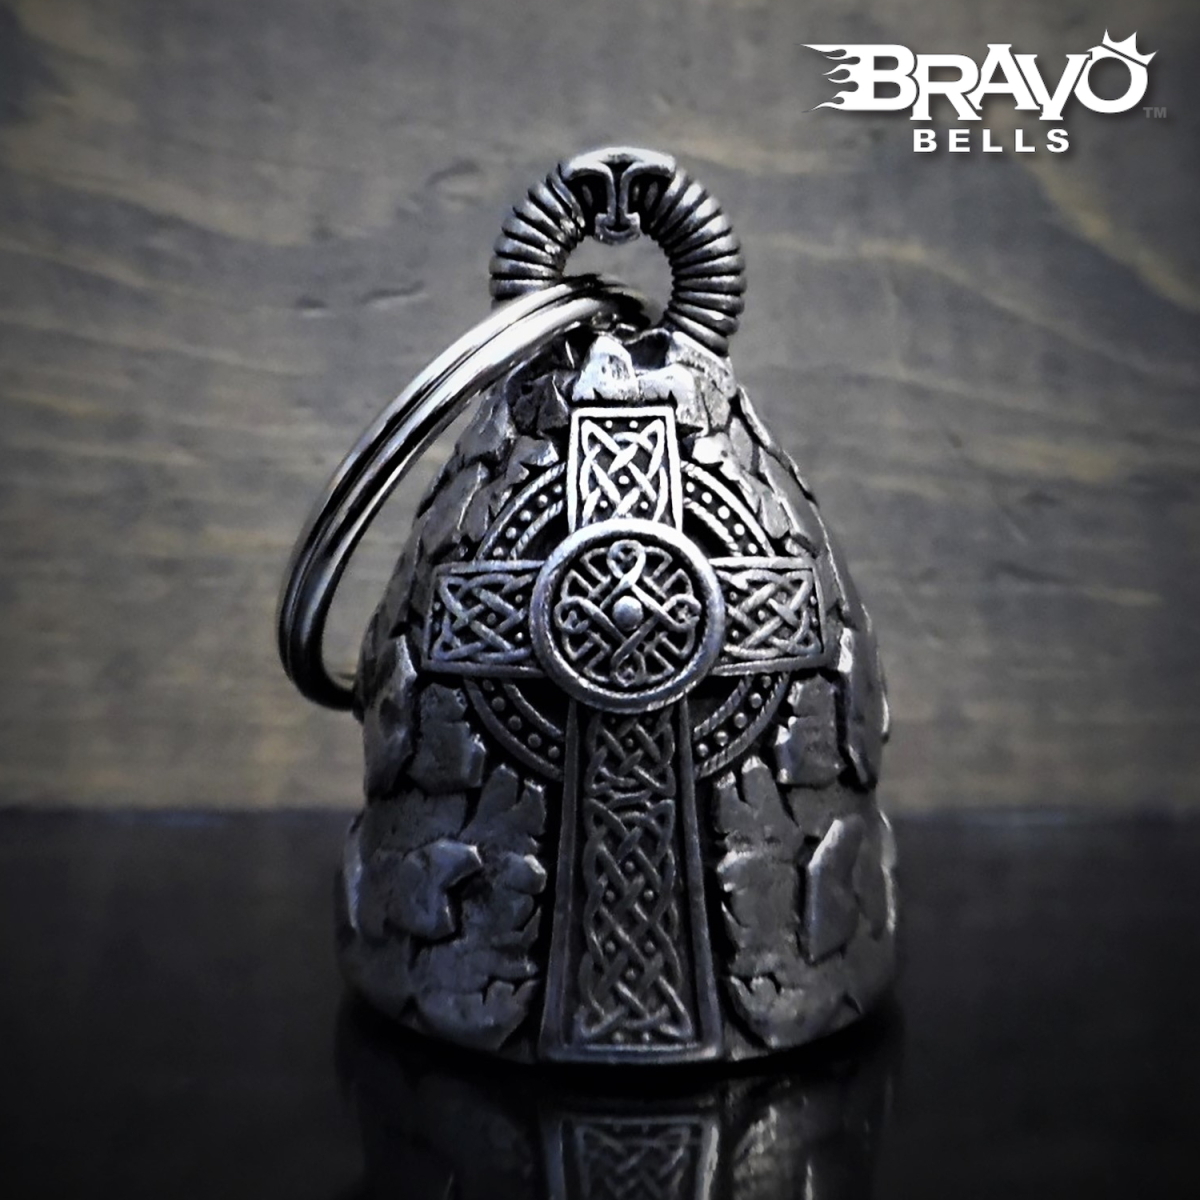 米国製 Bravo Bells ケルト十字 ベル [Celtic Cross] Made in USA 魔除け お守り バイク オートバイ 鈴 アクセサリー ガーディアンベル_画像1